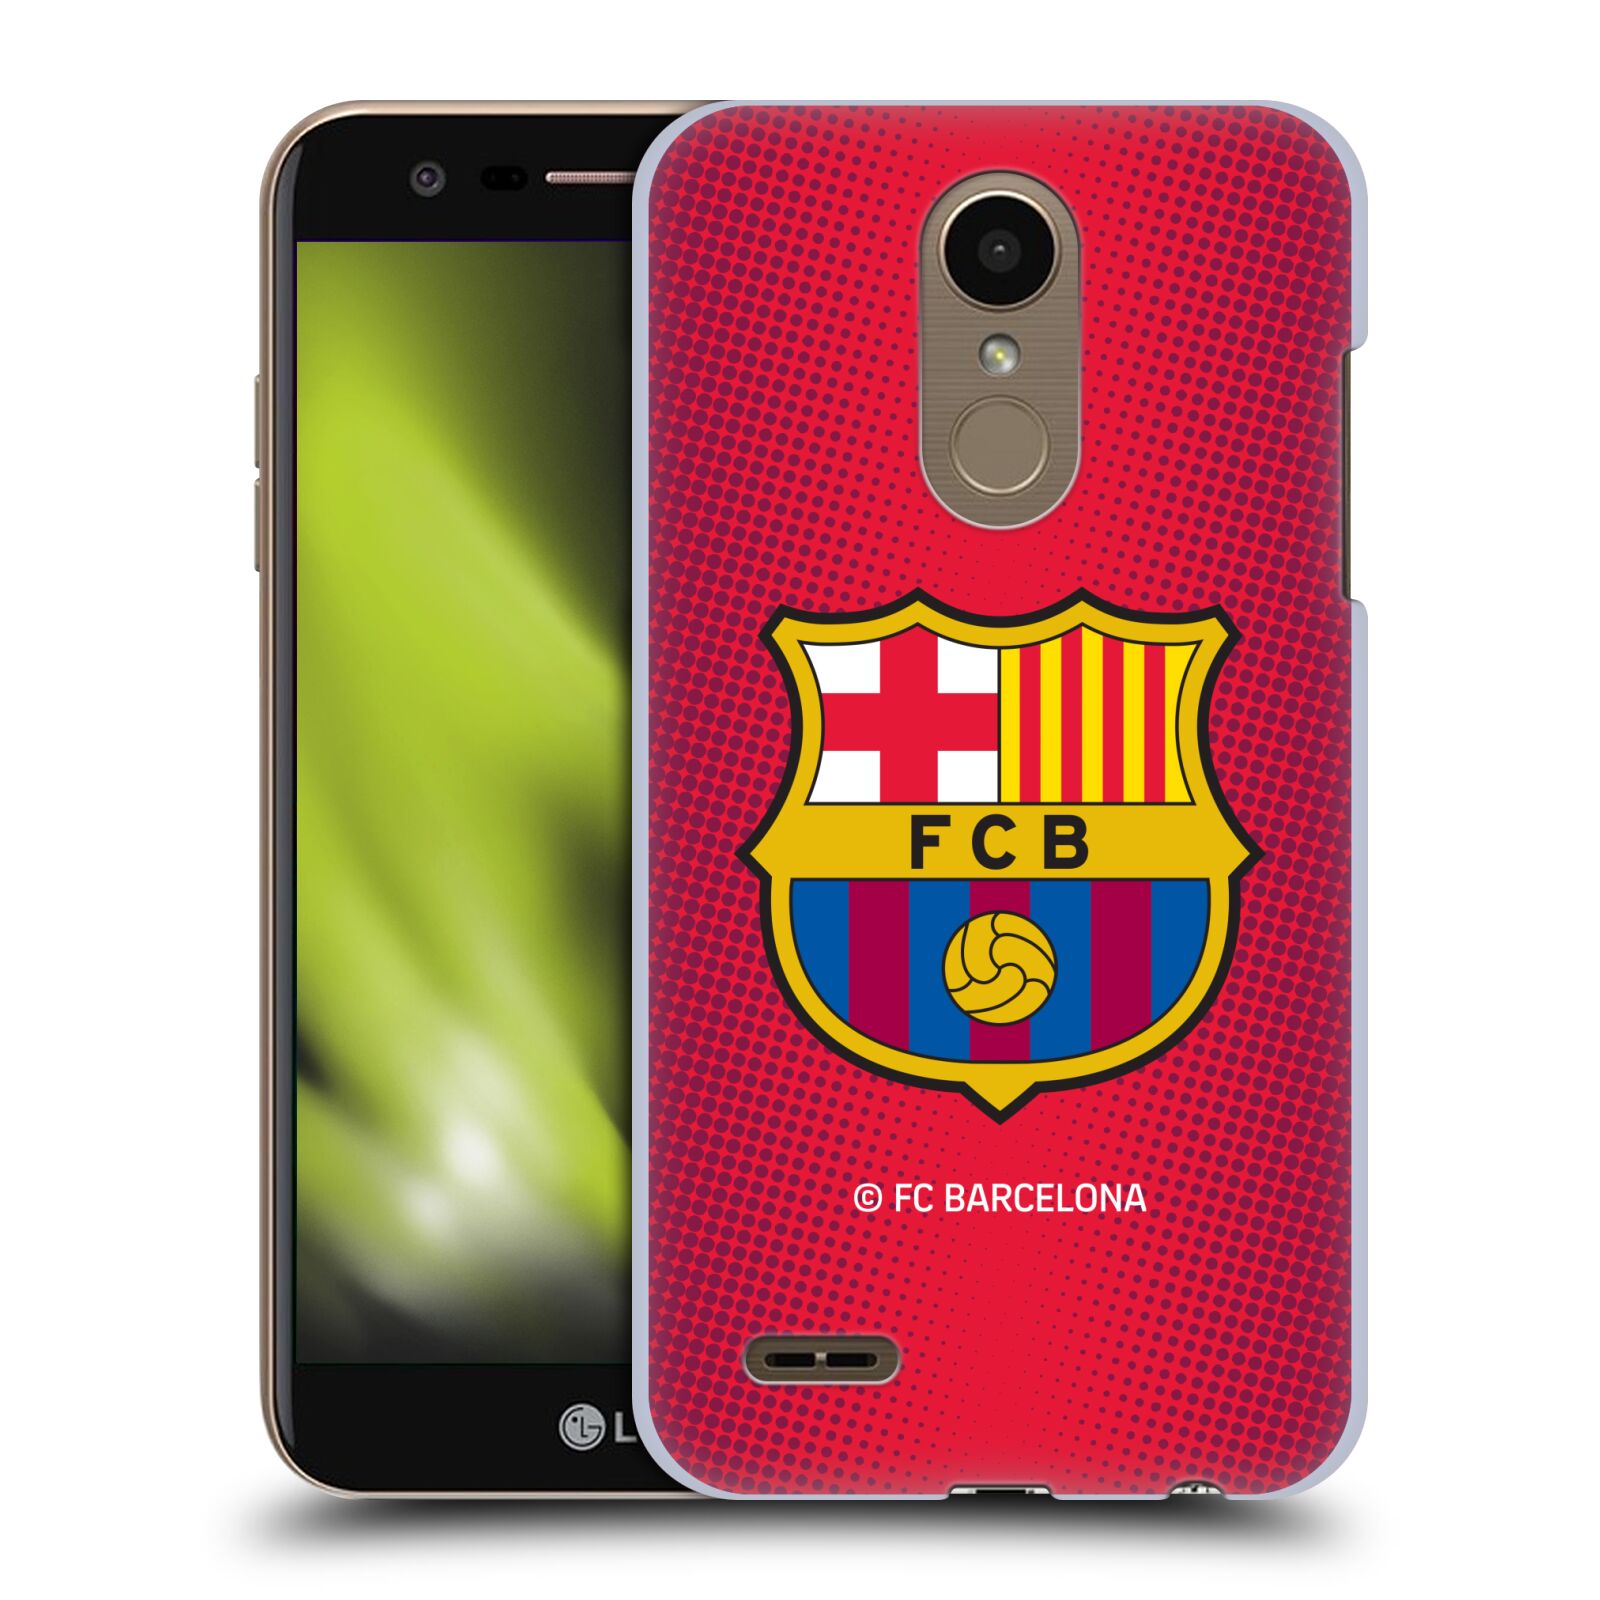 Obal na mobil LG K10 2018 - HEAD CASE - FC BARCELONA - Velký znak červená a modrá